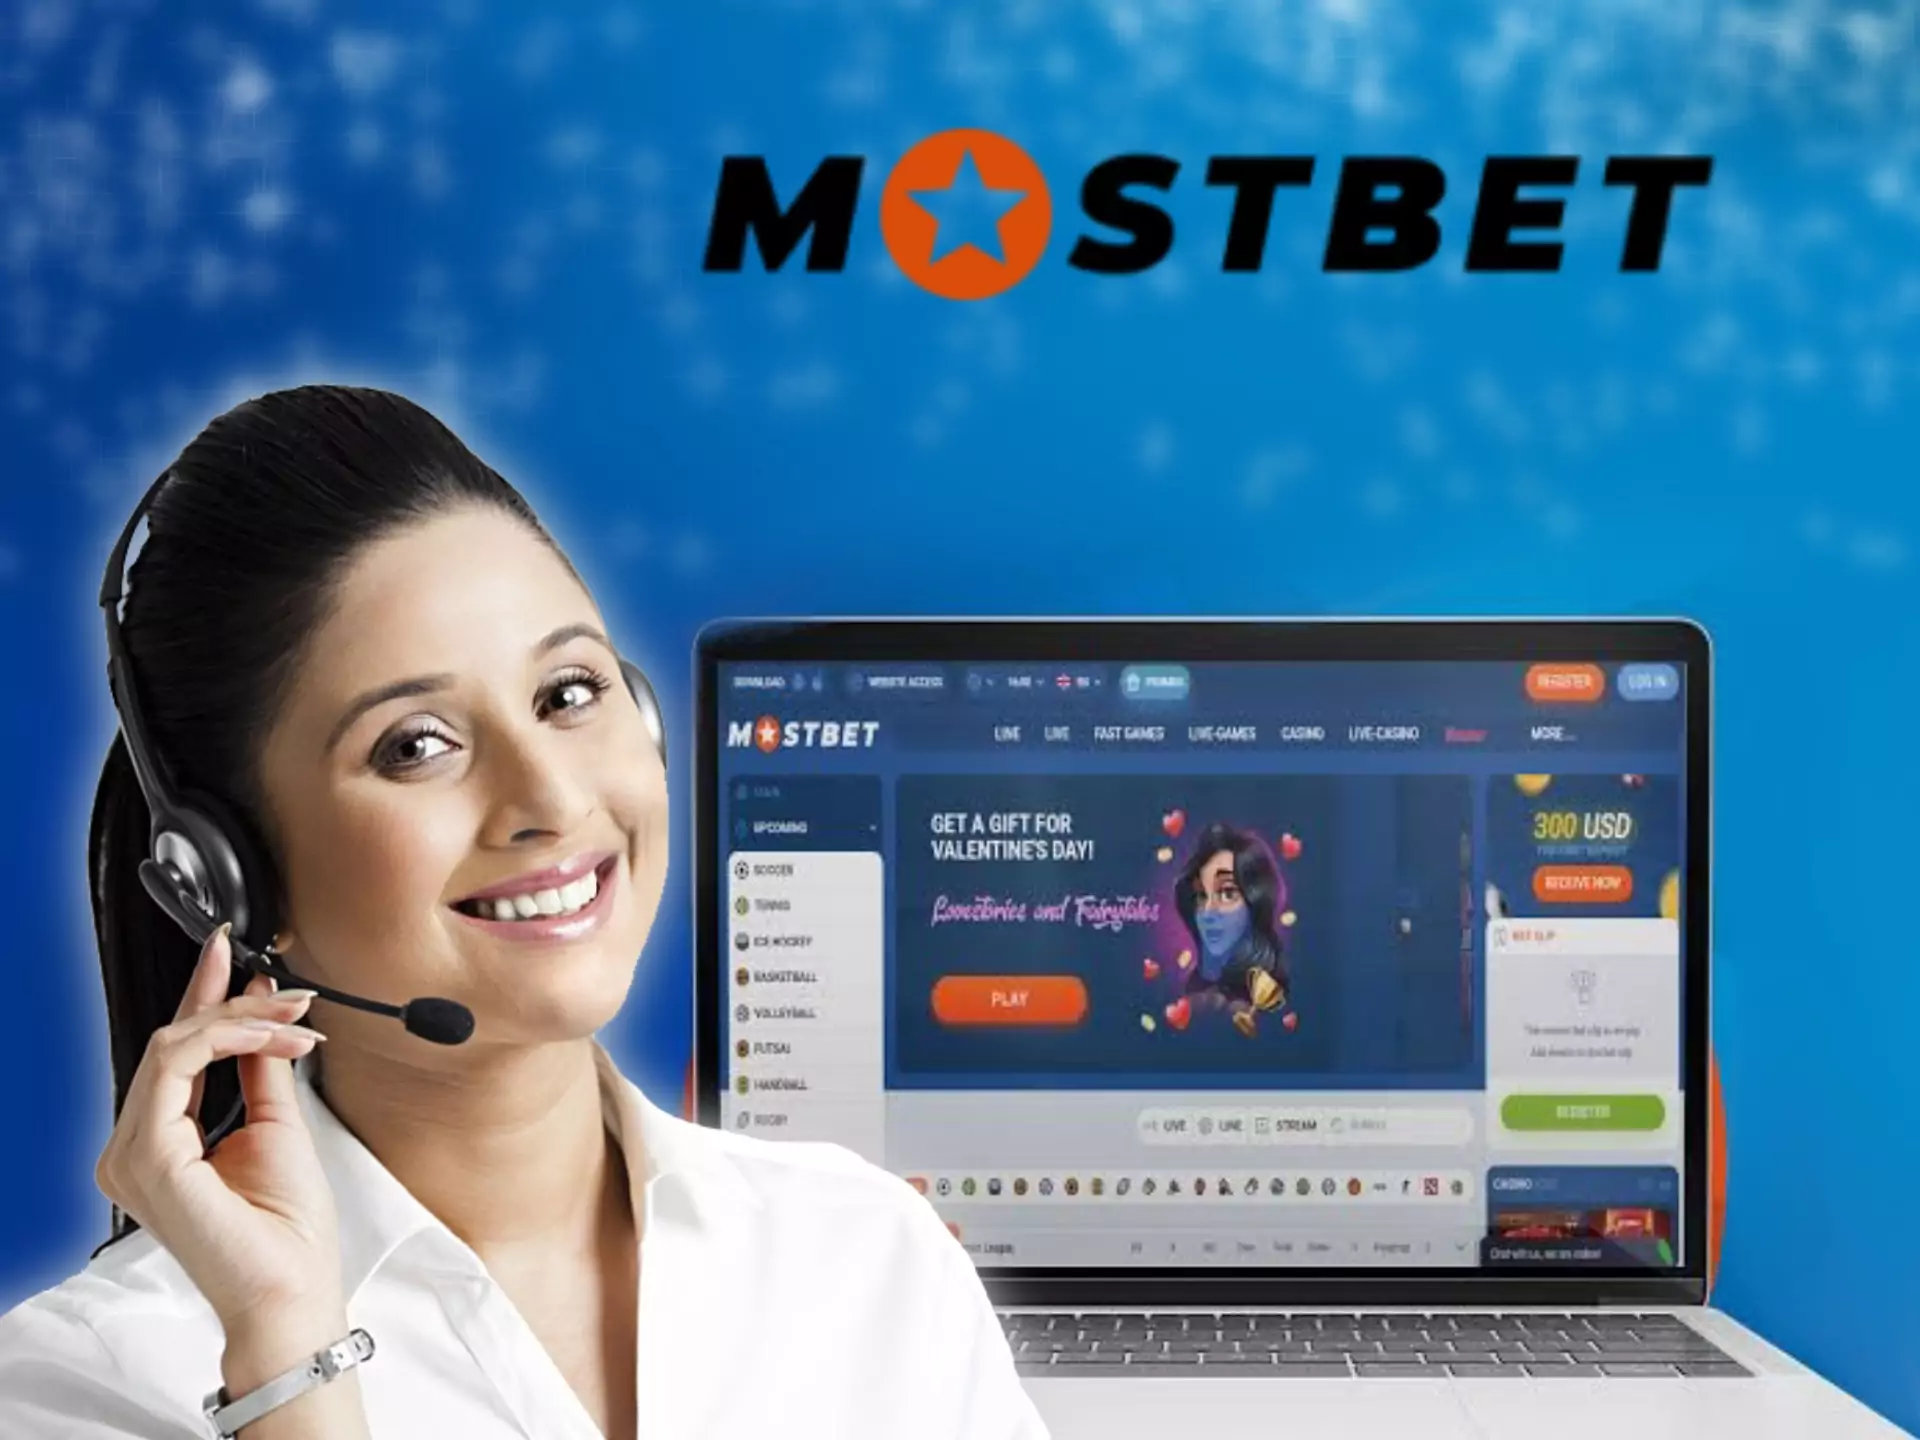 आपकी समस्याओं को हल करने के लिए Mostbet ग्राहक सहायता 24/7 उपलब्ध है।